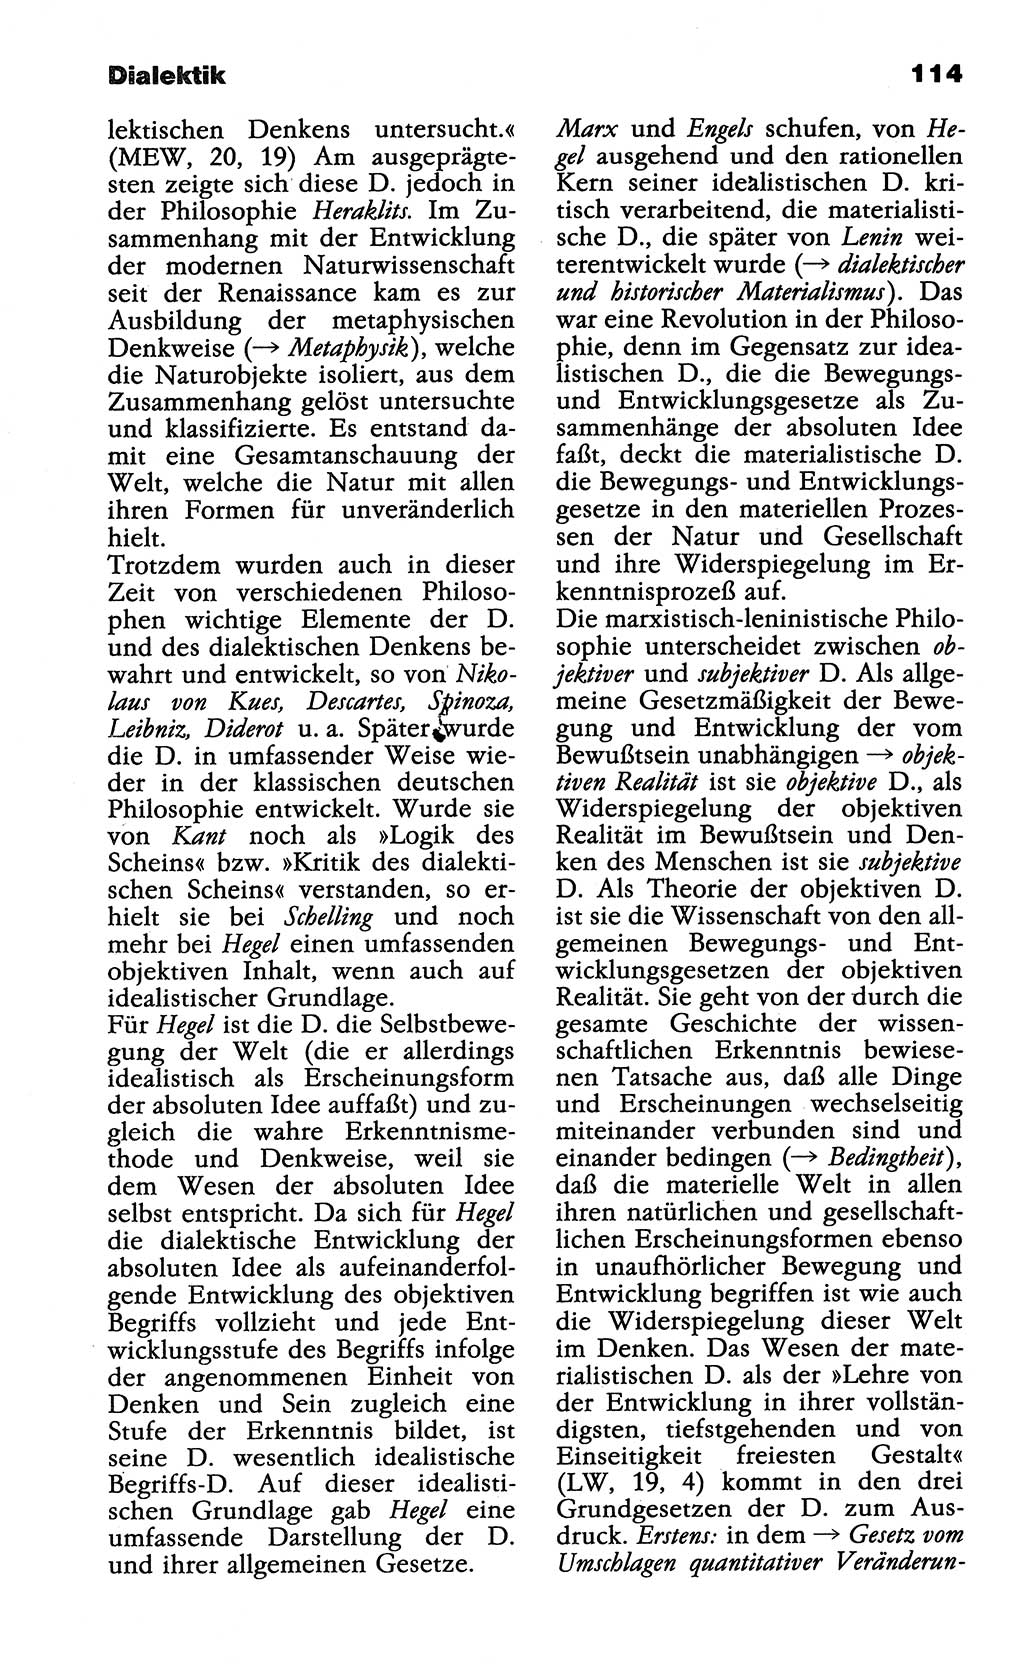 Wörterbuch der marxistisch-leninistischen Philosophie [Deutsche Demokratische Republik (DDR)] 1985, Seite 114 (Wb. ML Phil. DDR 1985, S. 114)